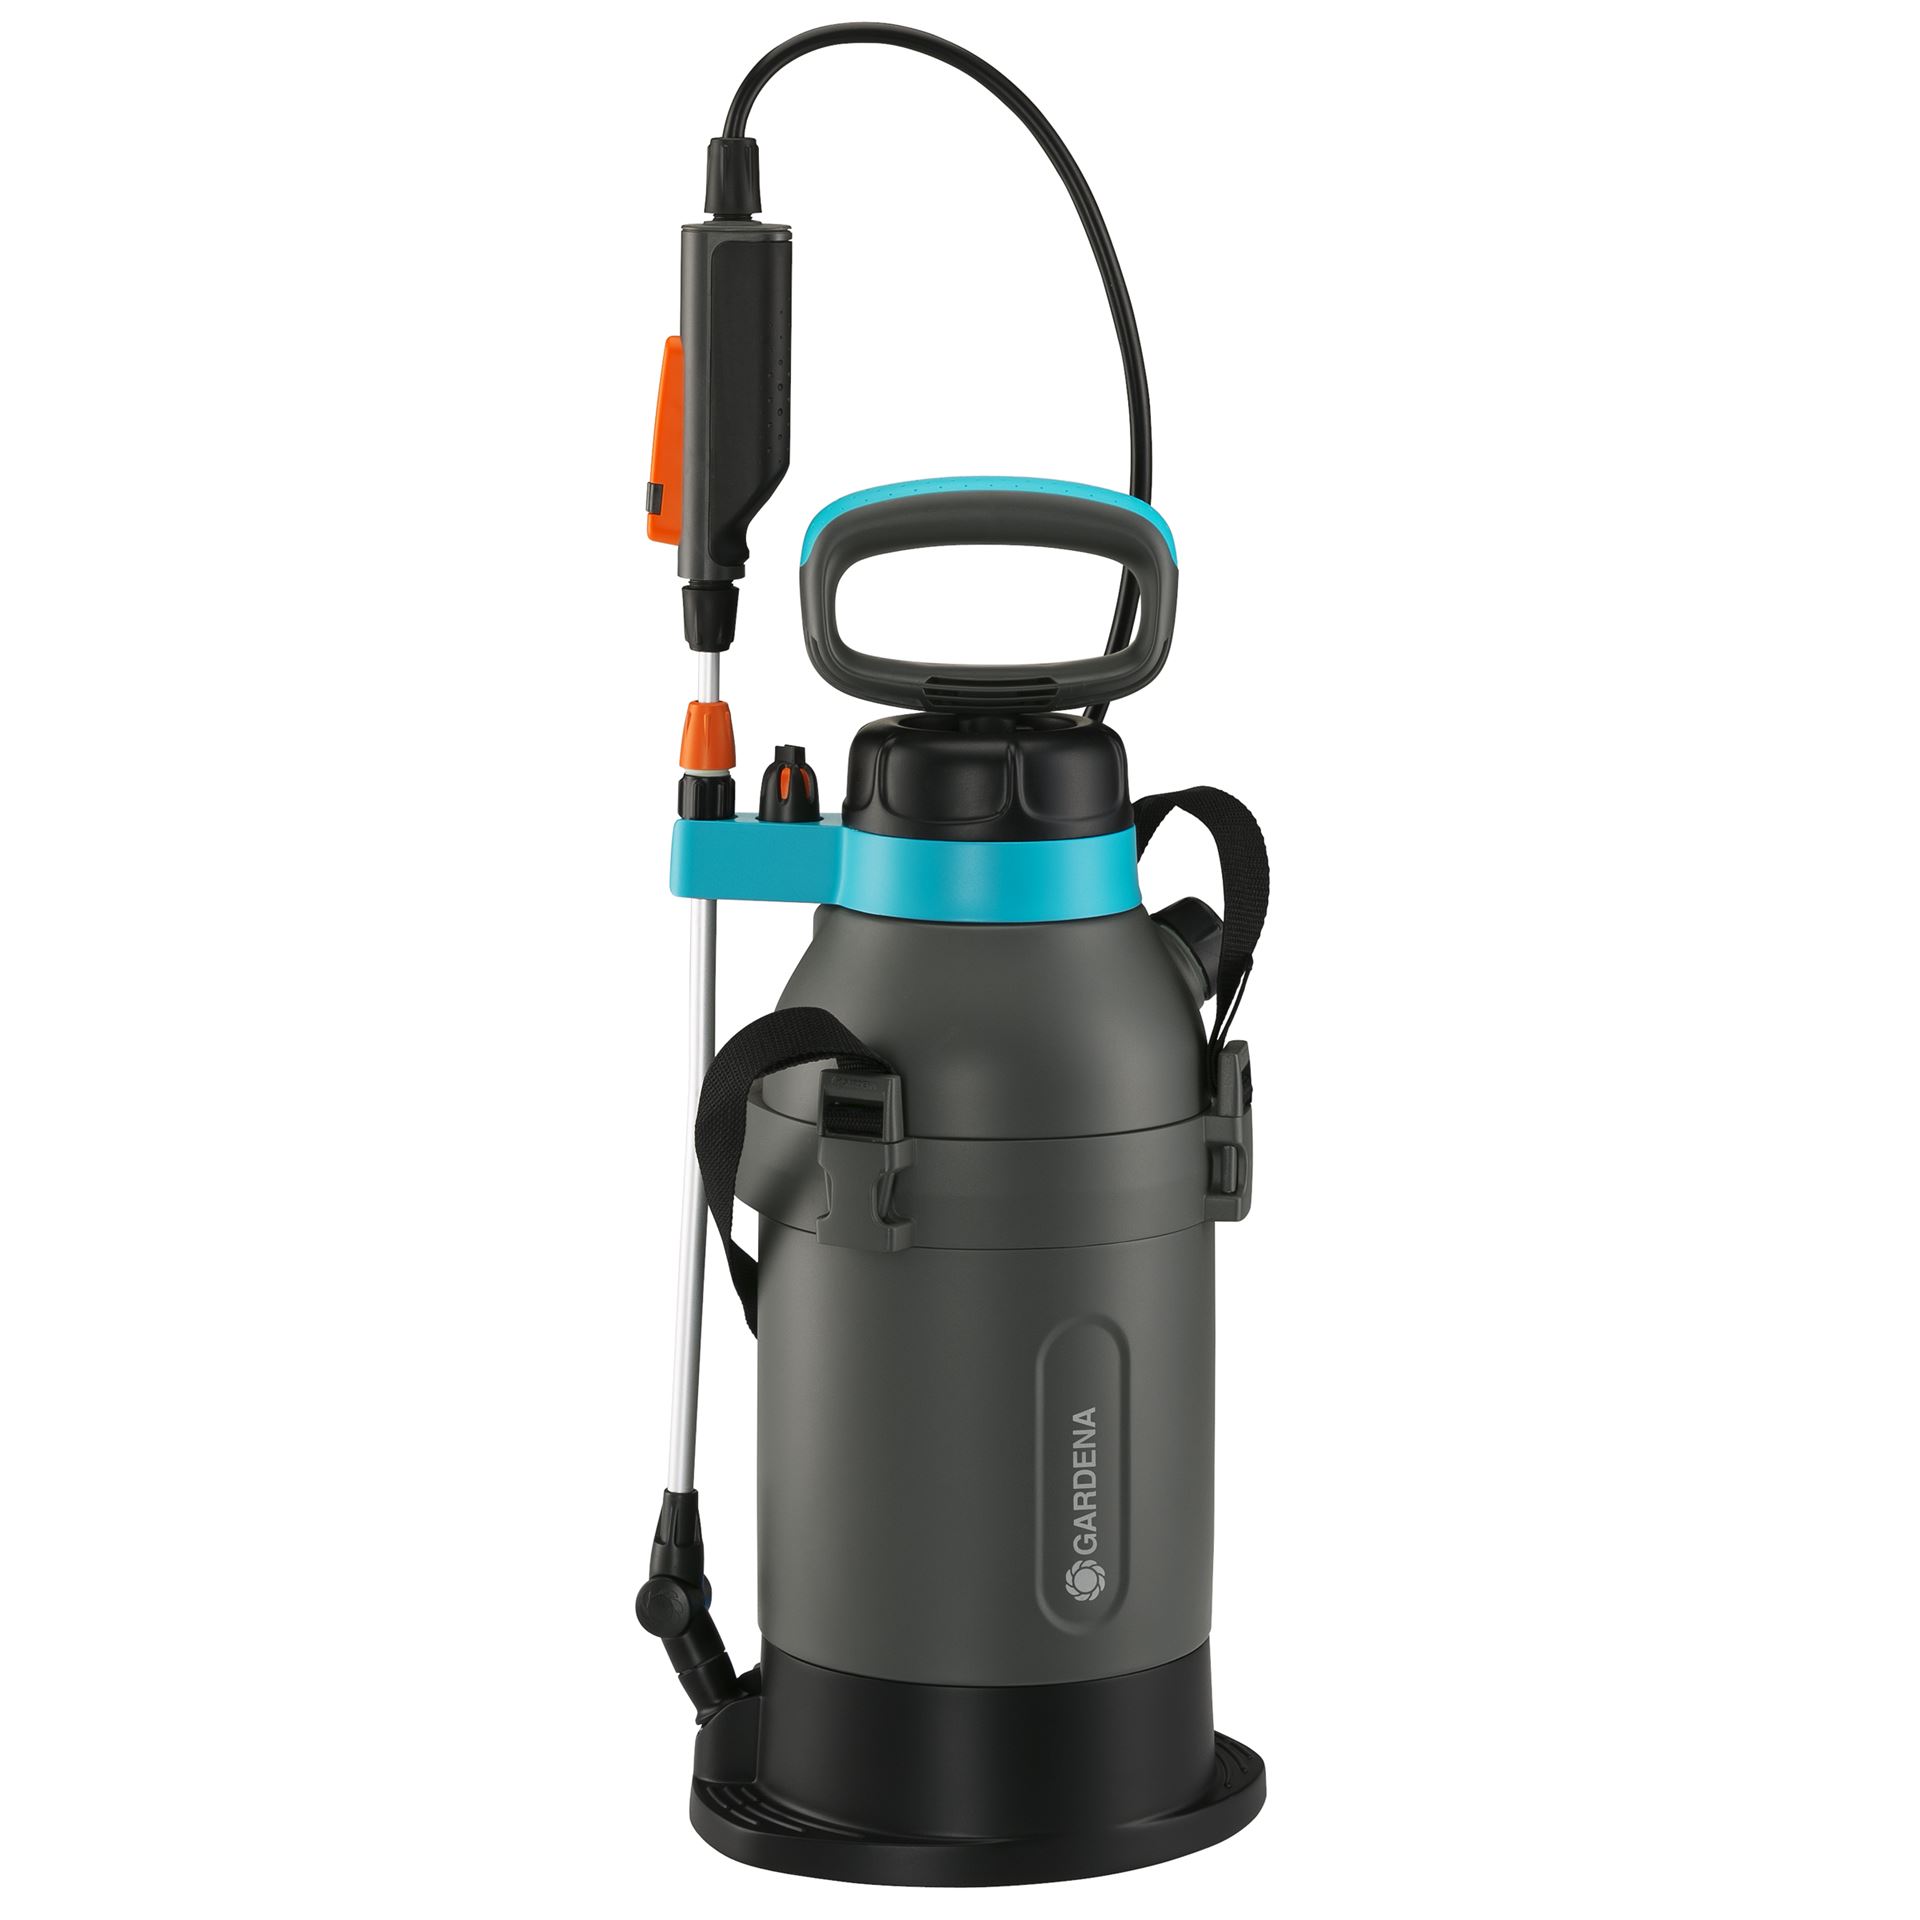 Gardena Pressure Sprayer 5 liters plus